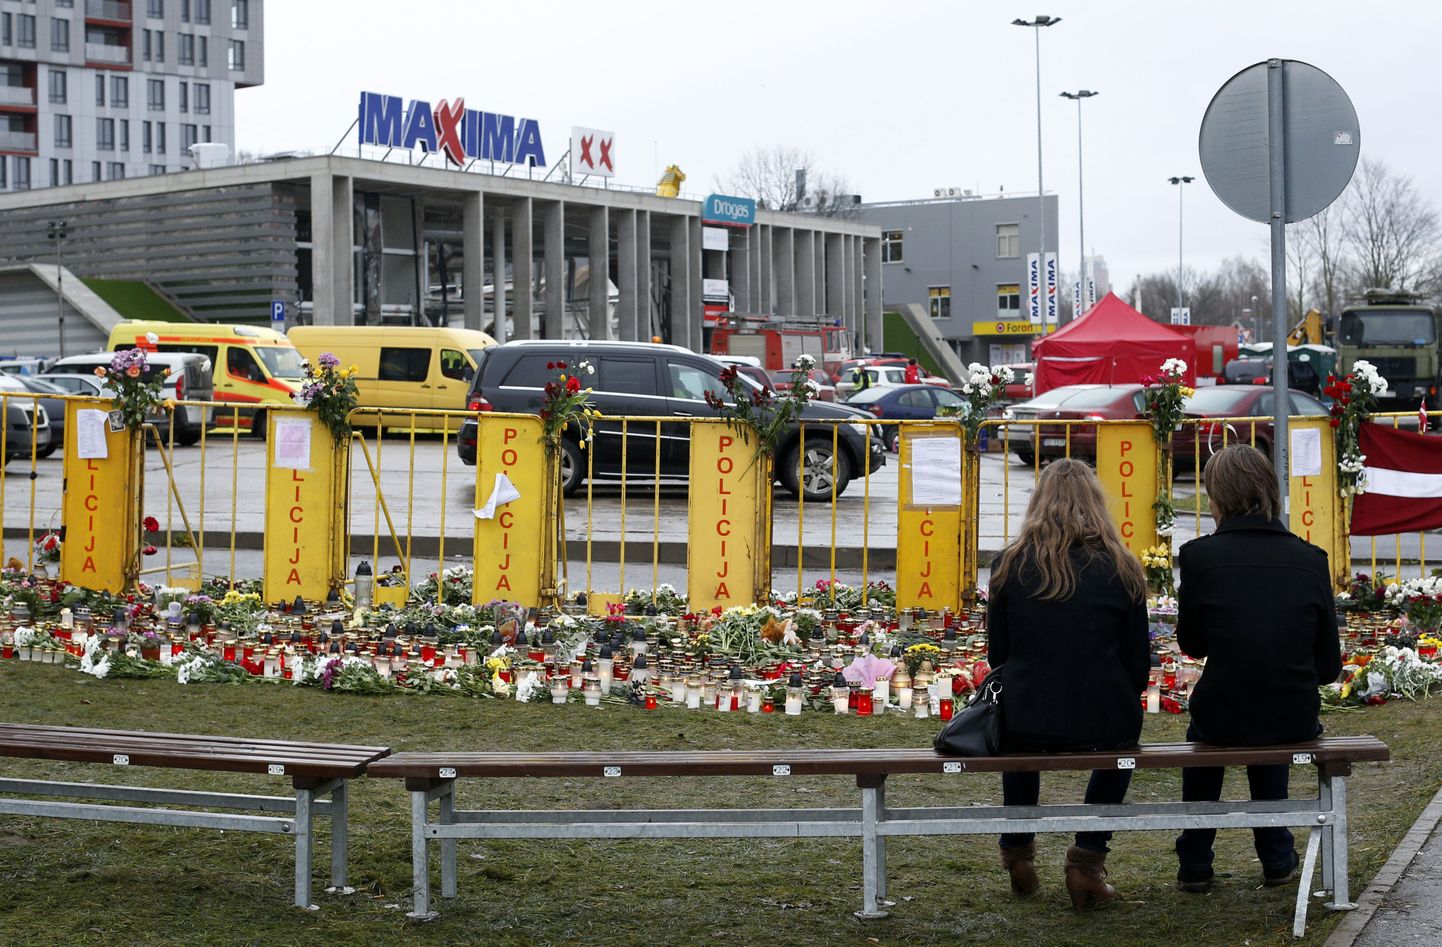 Riias Zolitūde linnaosas asunud kaubanduskeskuse varingus sai 21. novembril 2013 surma 54 inimest.